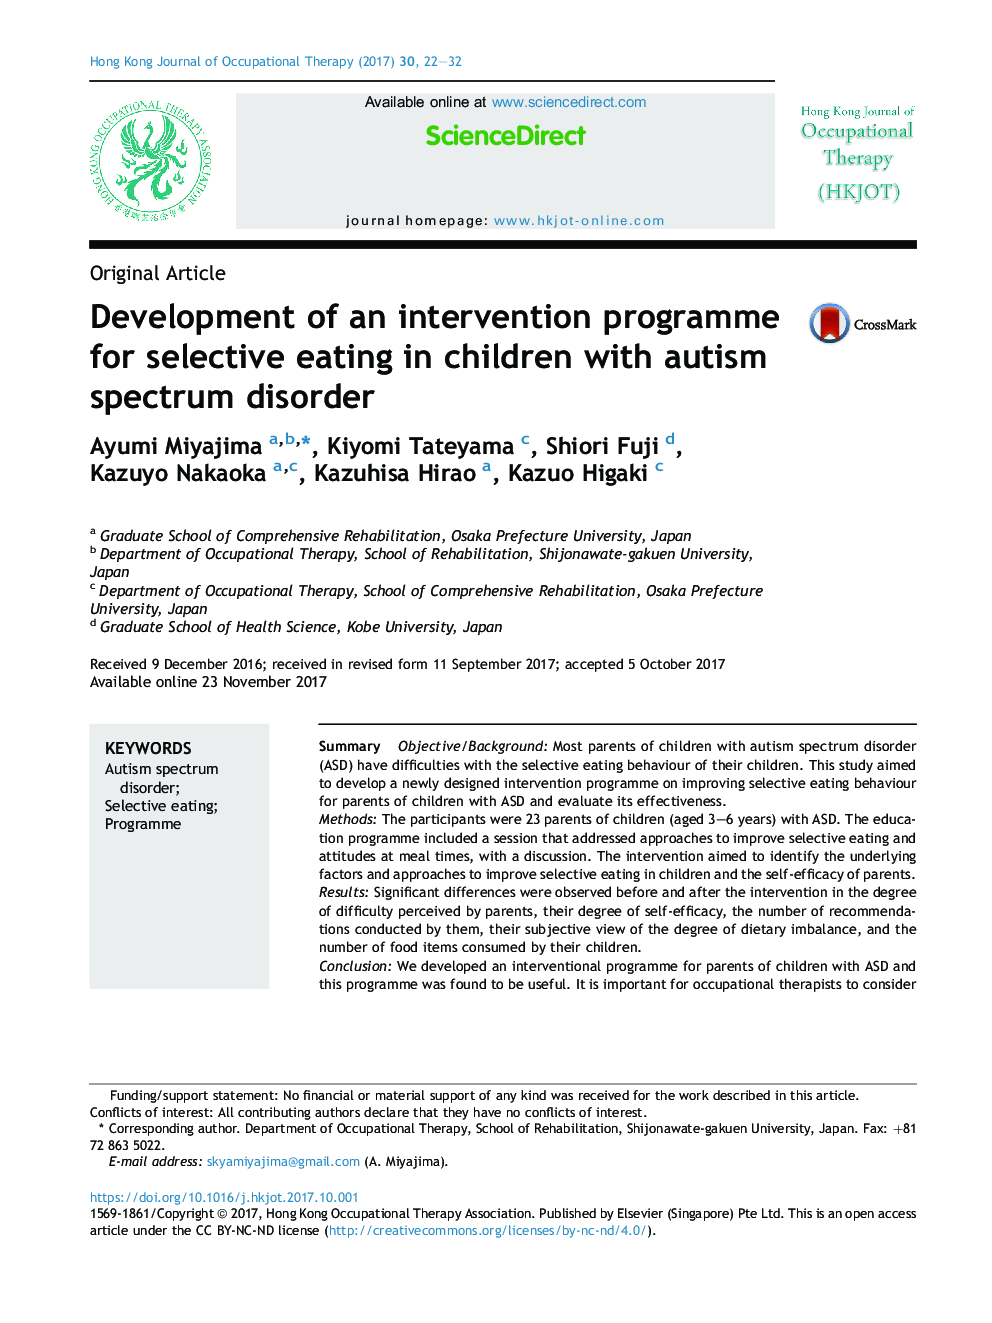 توسعه یک برنامه مداخله برای انتخاب غذا در کودکان مبتلا به اختلال طیف اوتیسم 